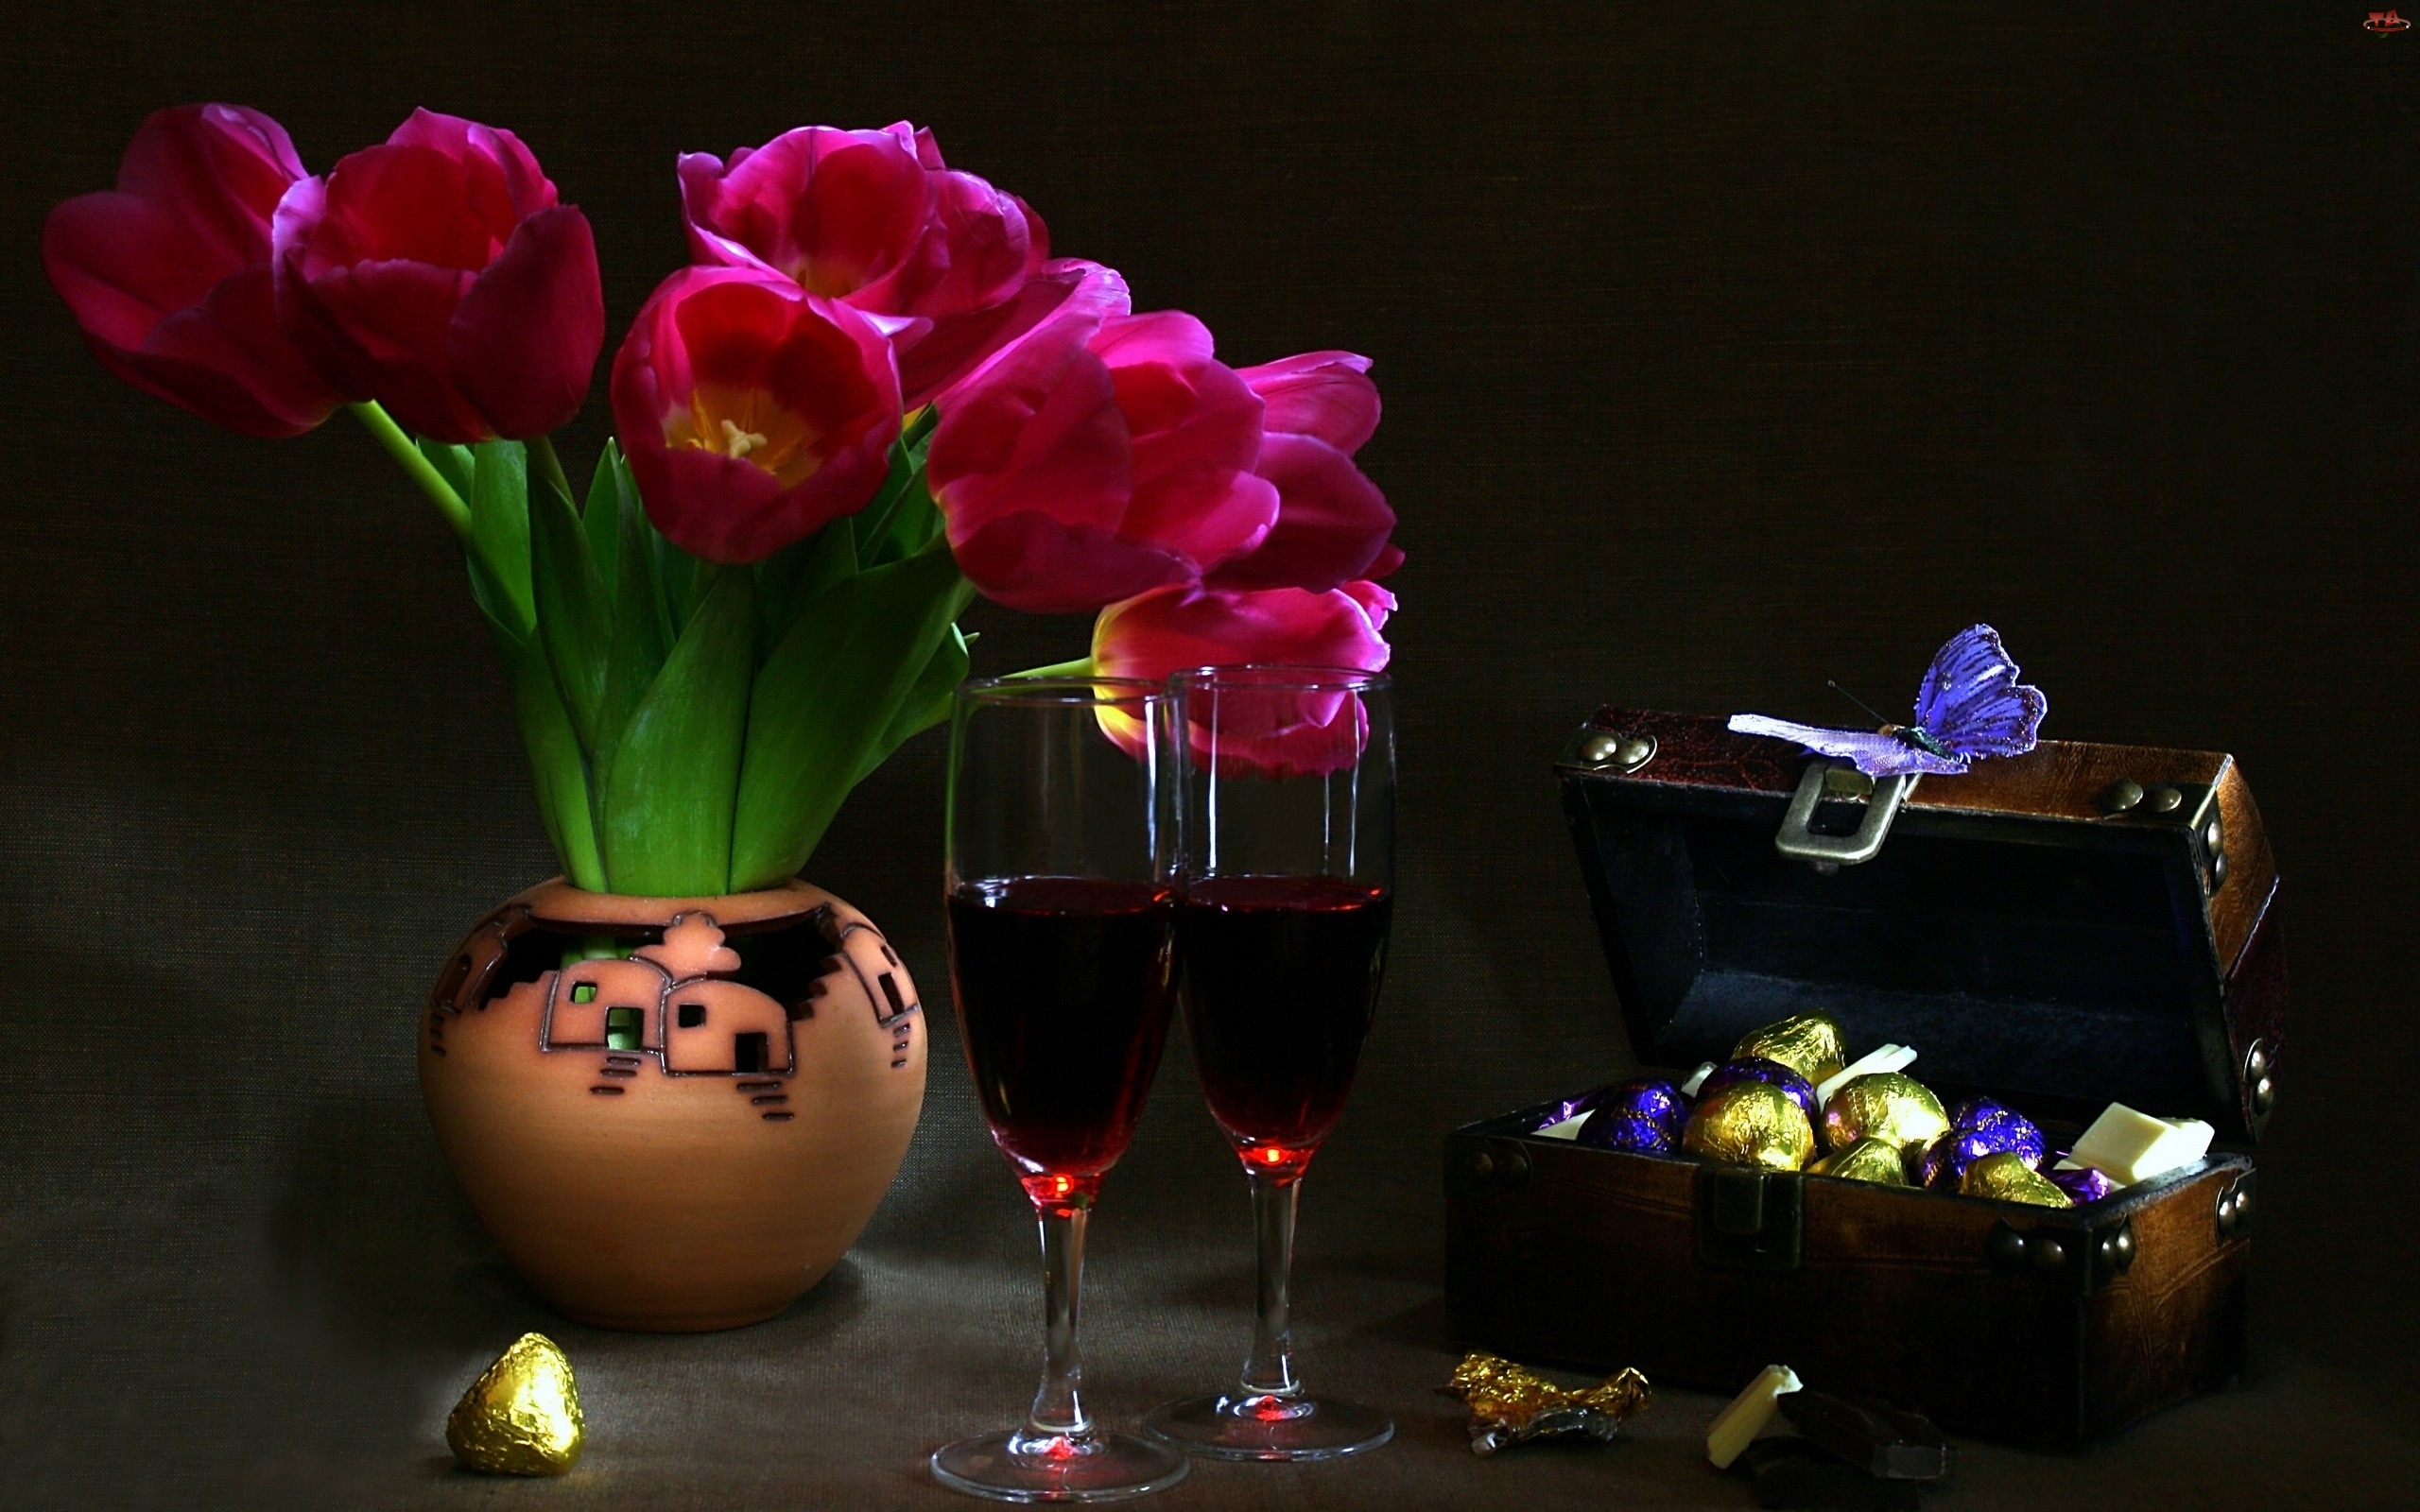 Czekoladki, Tulipany, Wino